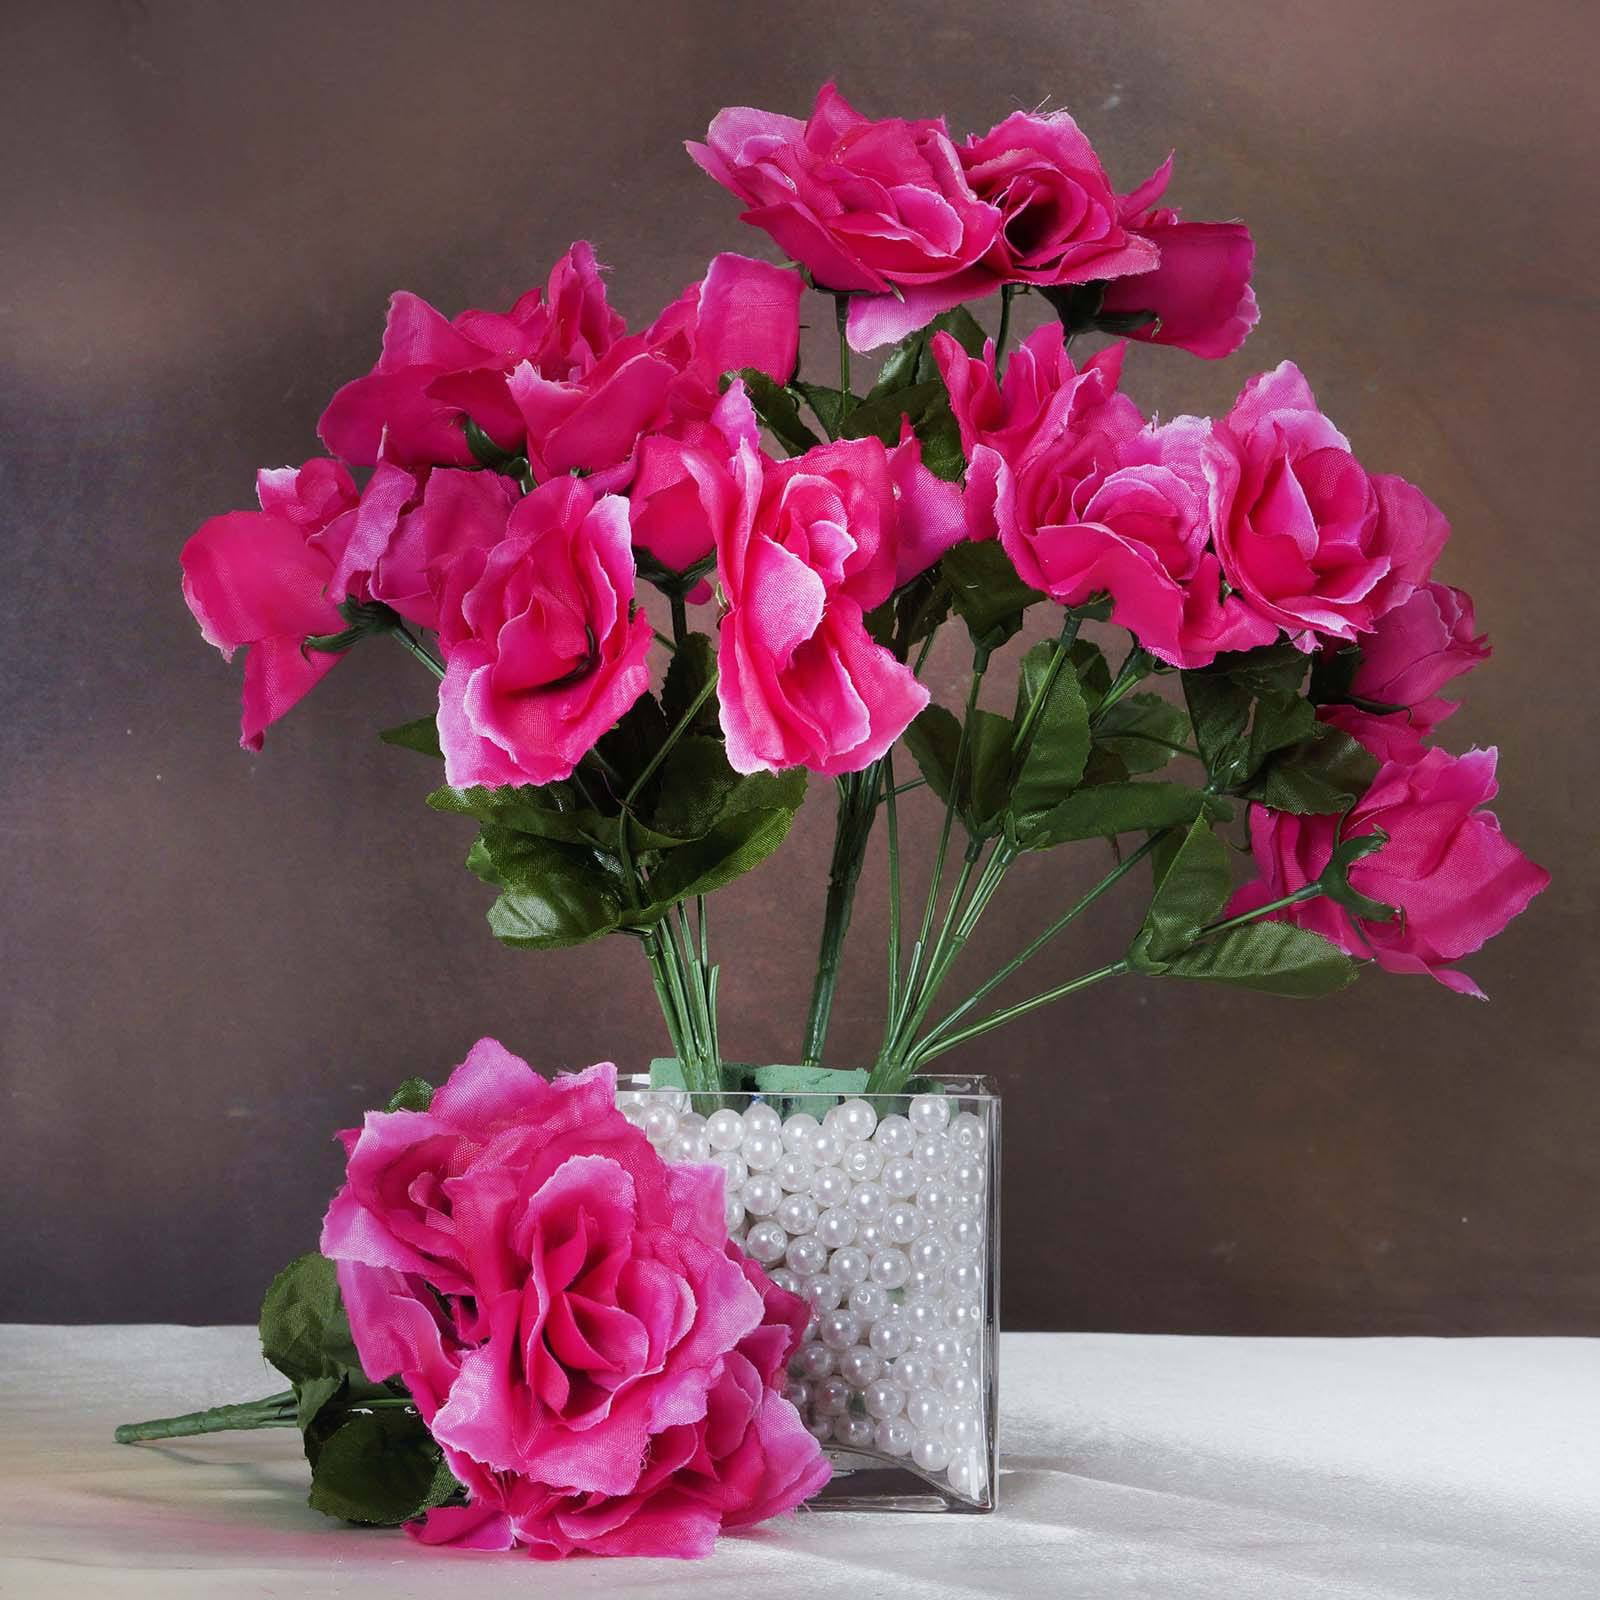 84 Rose Buds CREAM PINK Silk Wedding Bouquet Centerpiece Long Stem Flowers 